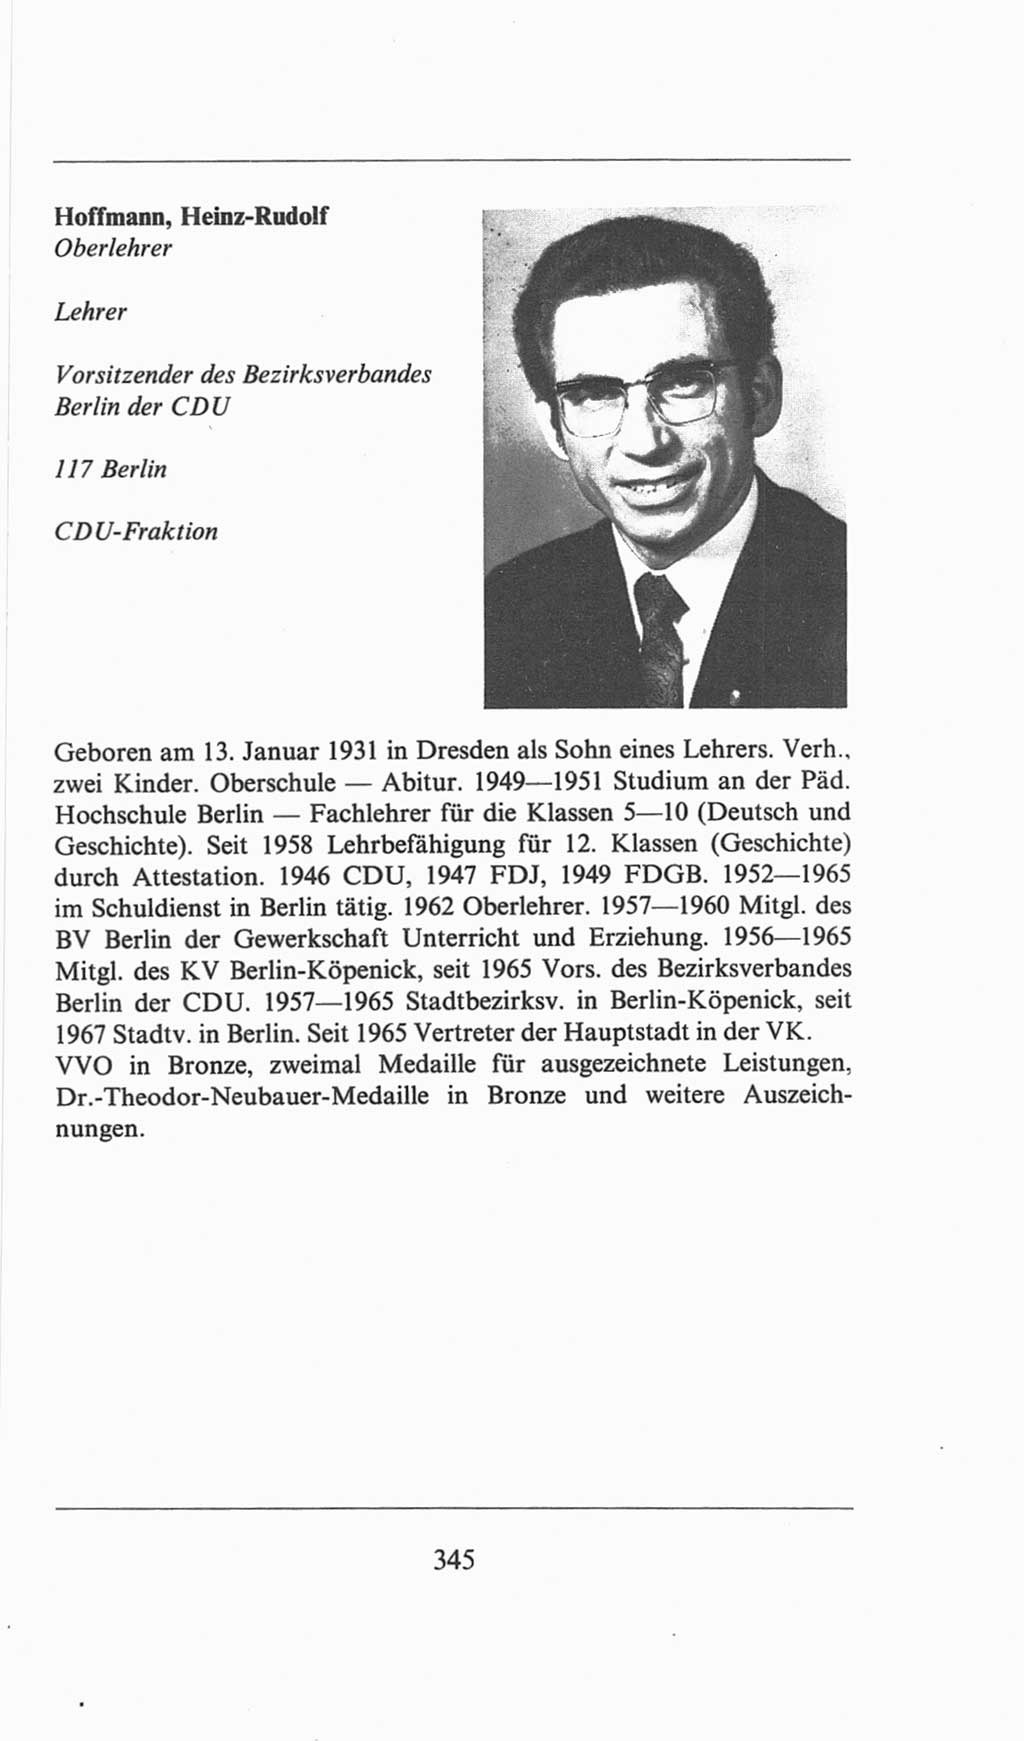 Volkskammer (VK) der Deutschen Demokratischen Republik (DDR), 6. Wahlperiode 1971-1976, Seite 345 (VK. DDR 6. WP. 1971-1976, S. 345)